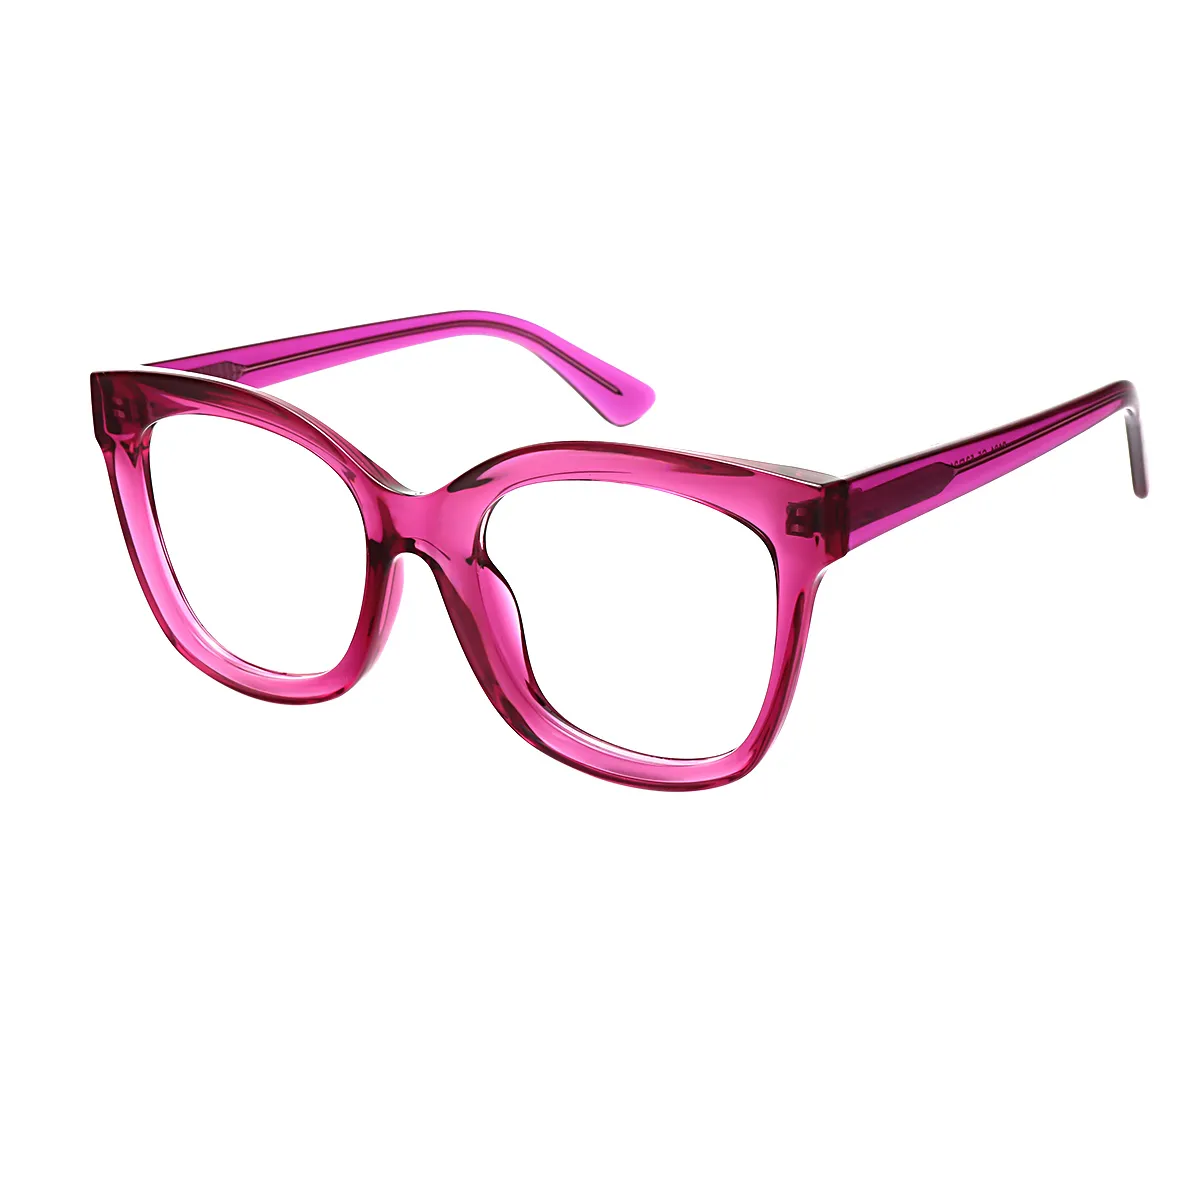 Classic Cat-eye Red Eyeglasses for Women